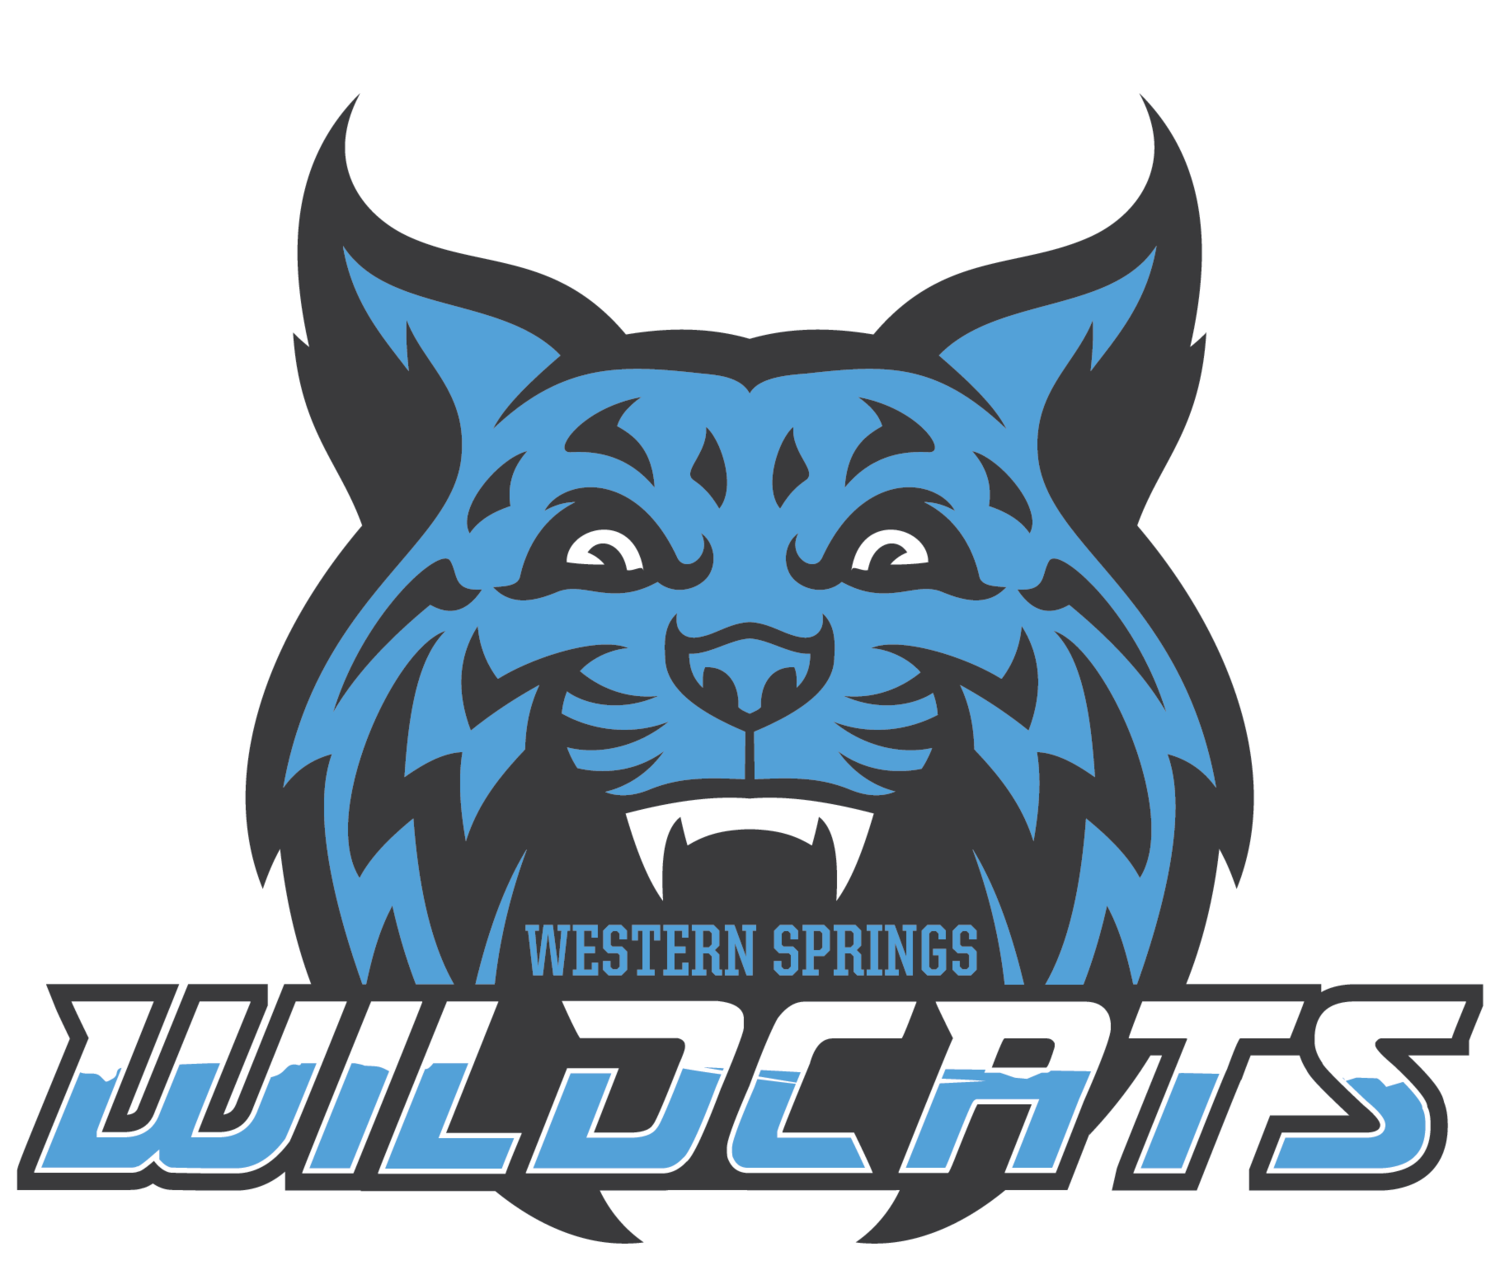 Wildcat clipart blue. Western springs wildcats 